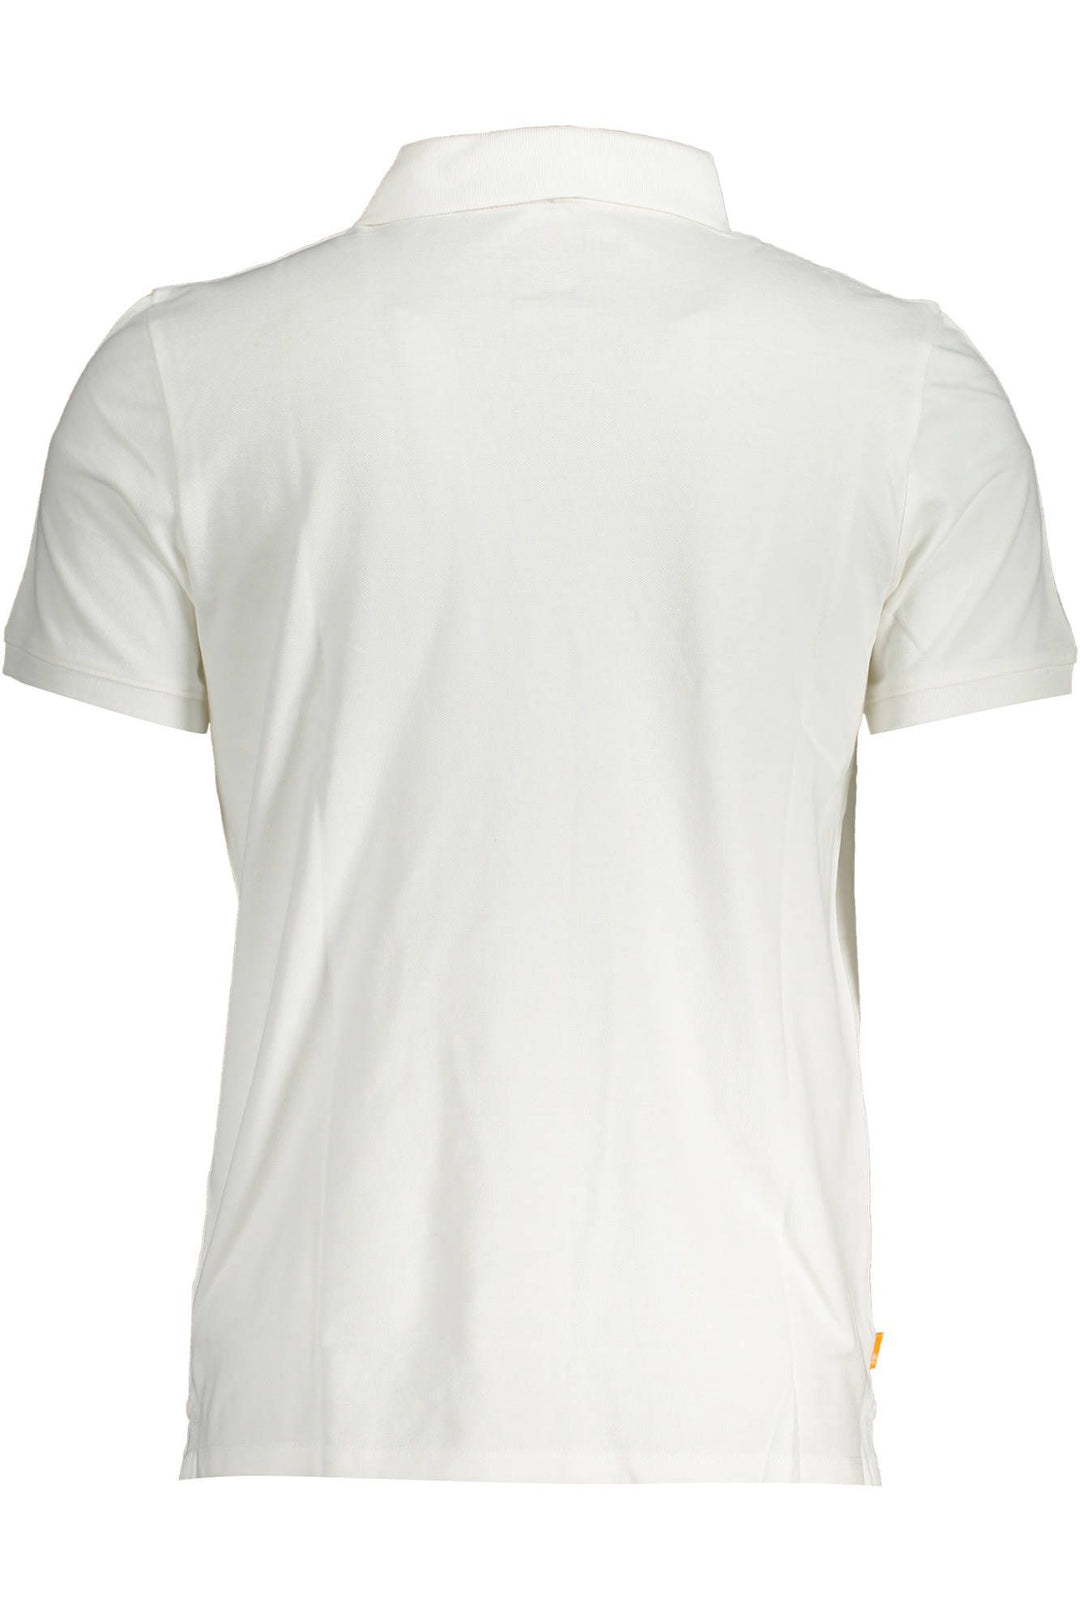 Timberland Elegant White Cotton Polo Shirt